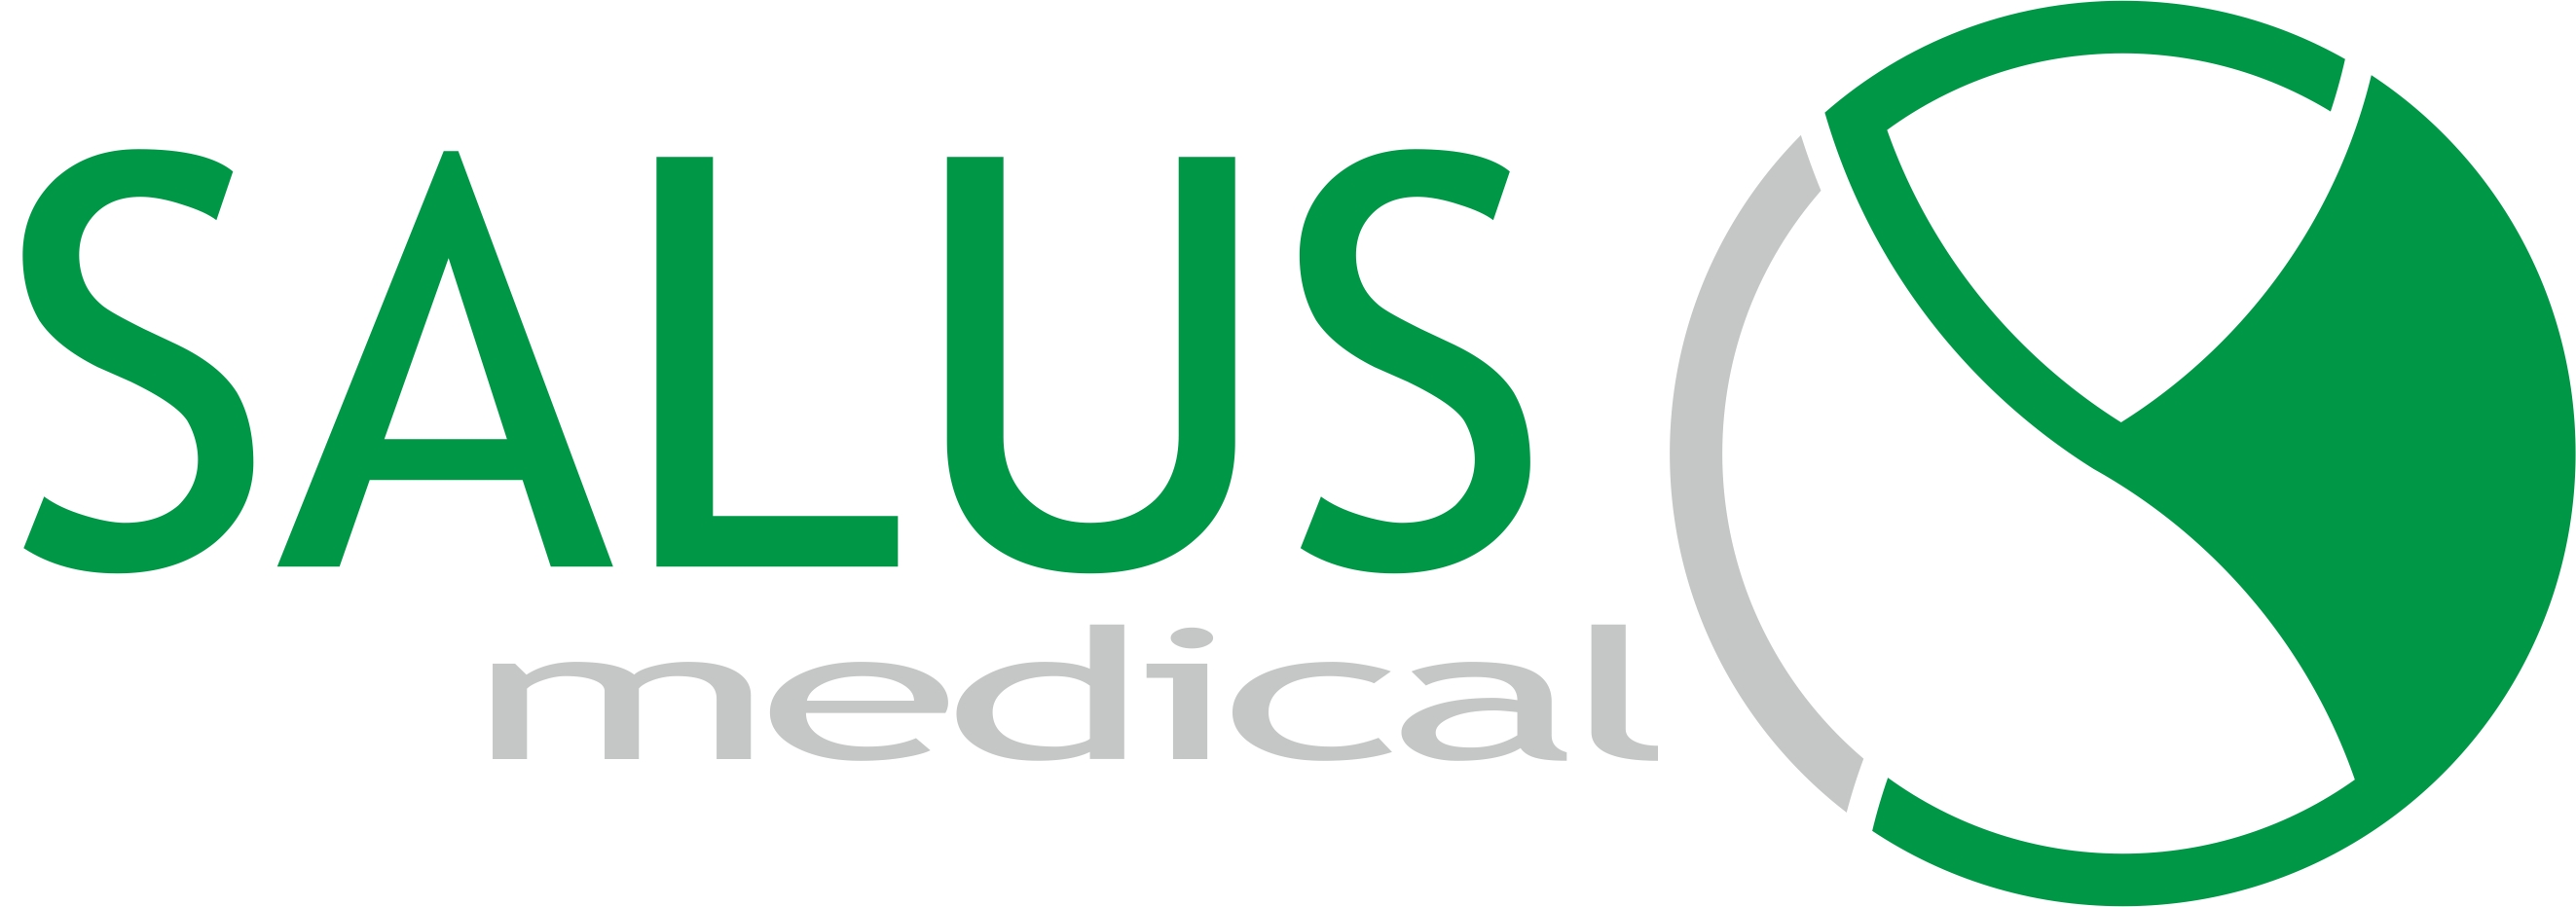 SALUS Medical